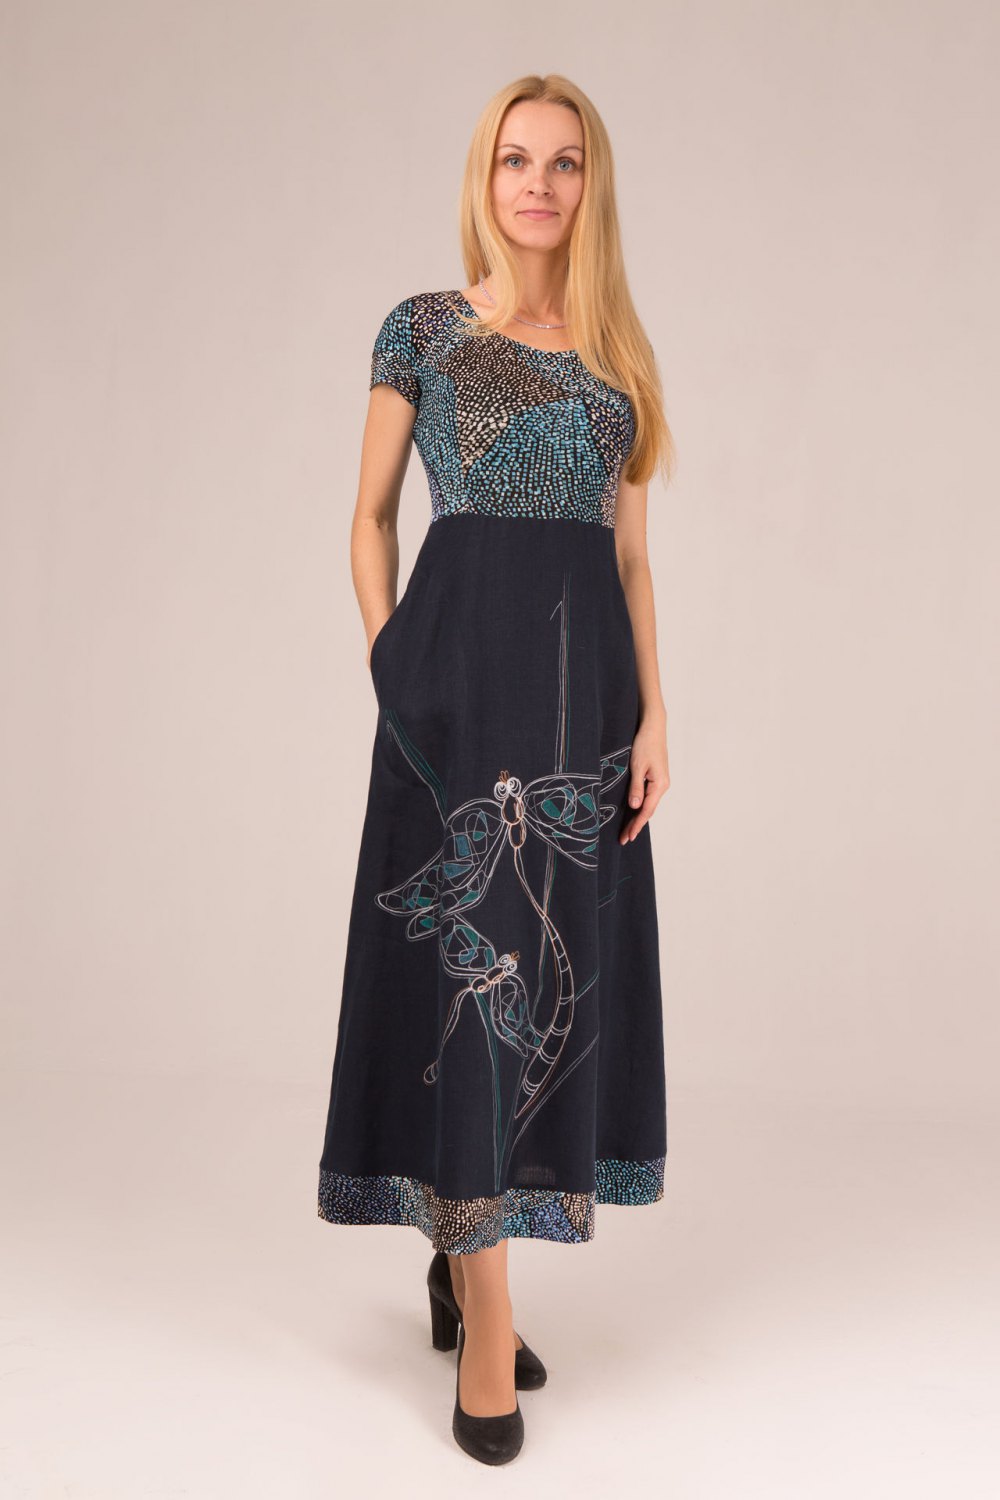 Платье женское "Матрешка" модель 302/1 темно-синее